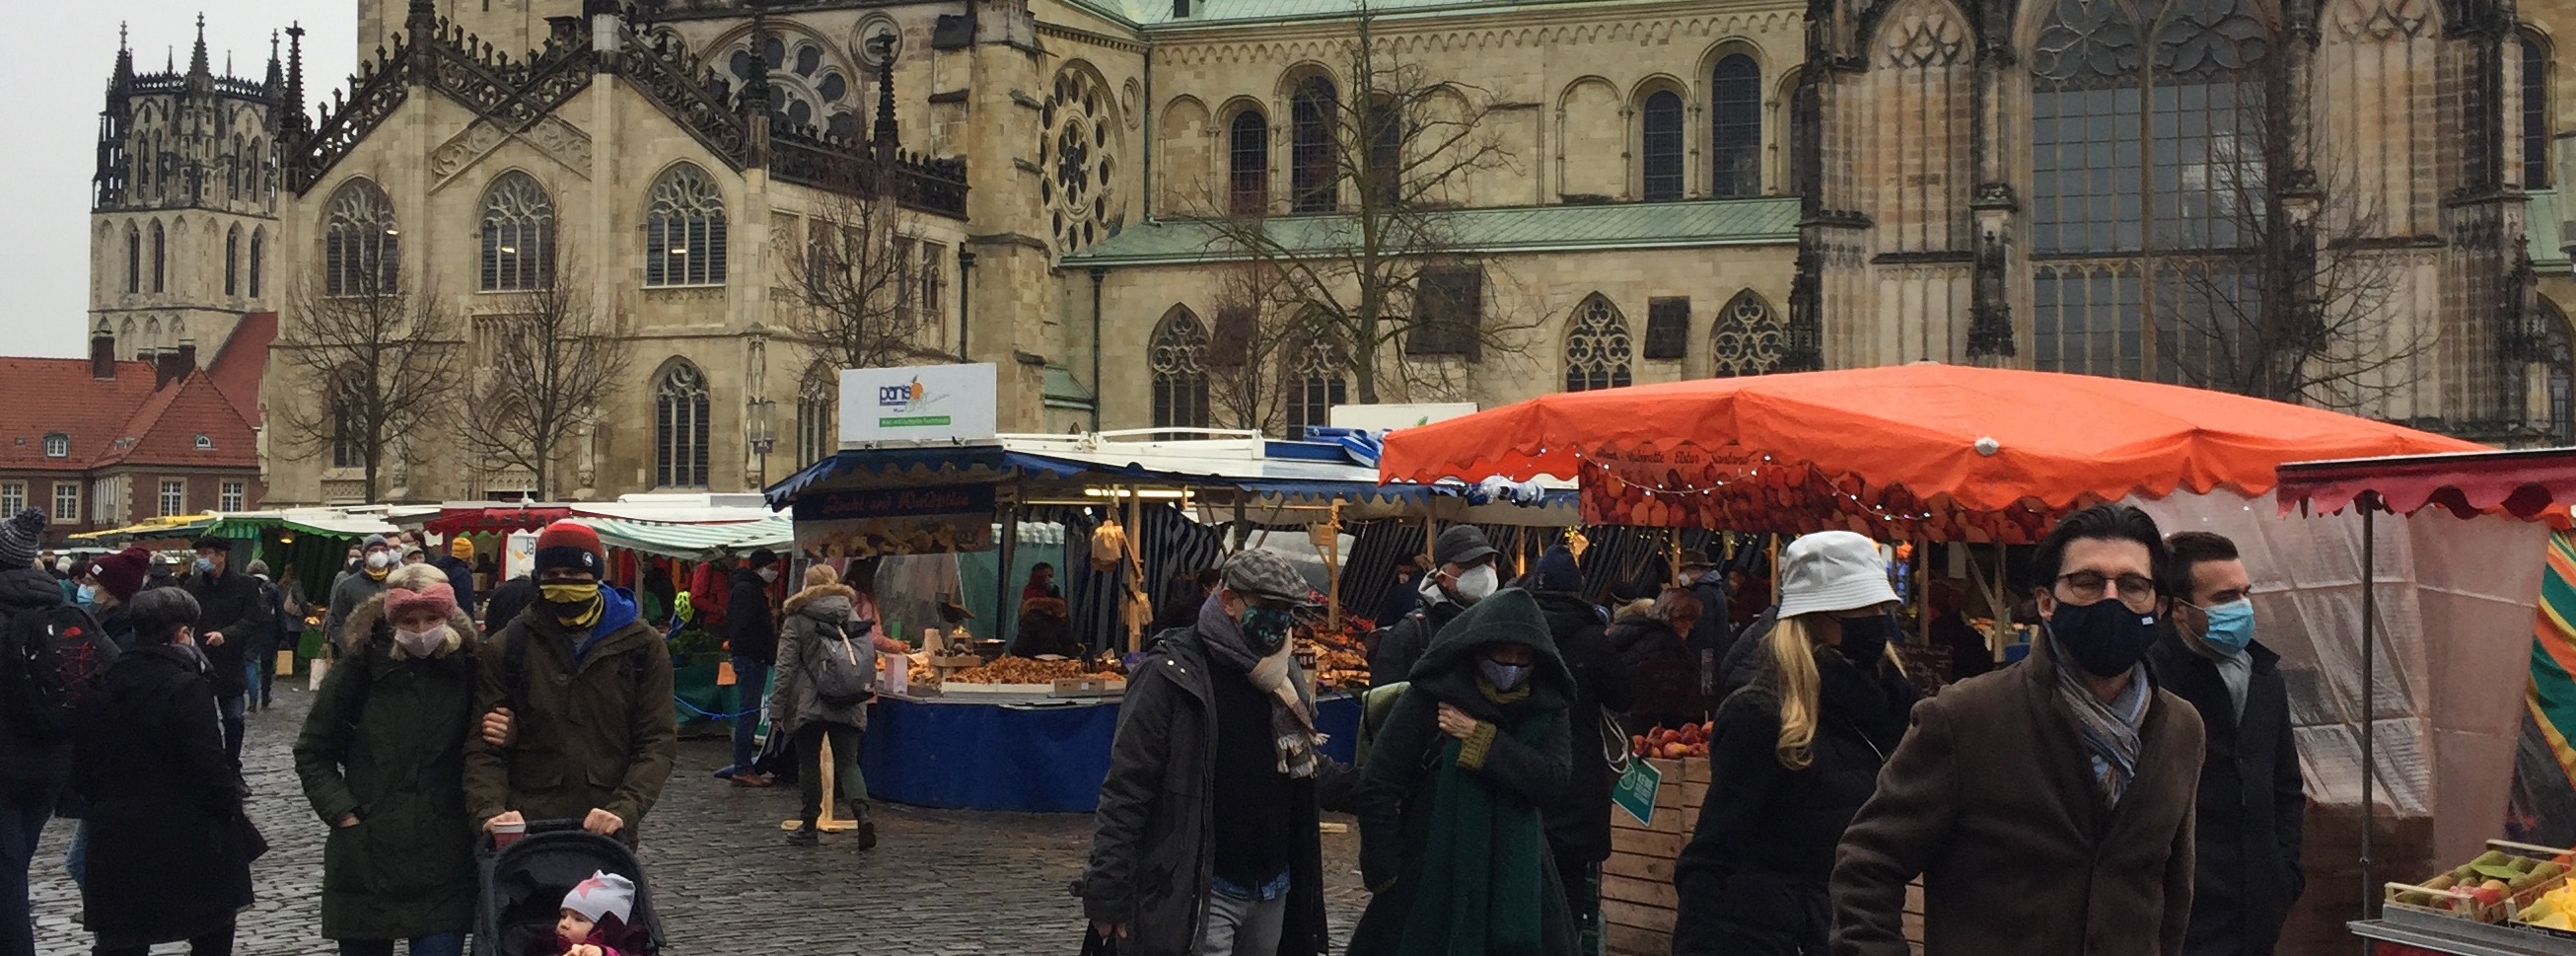 Markt in Münster